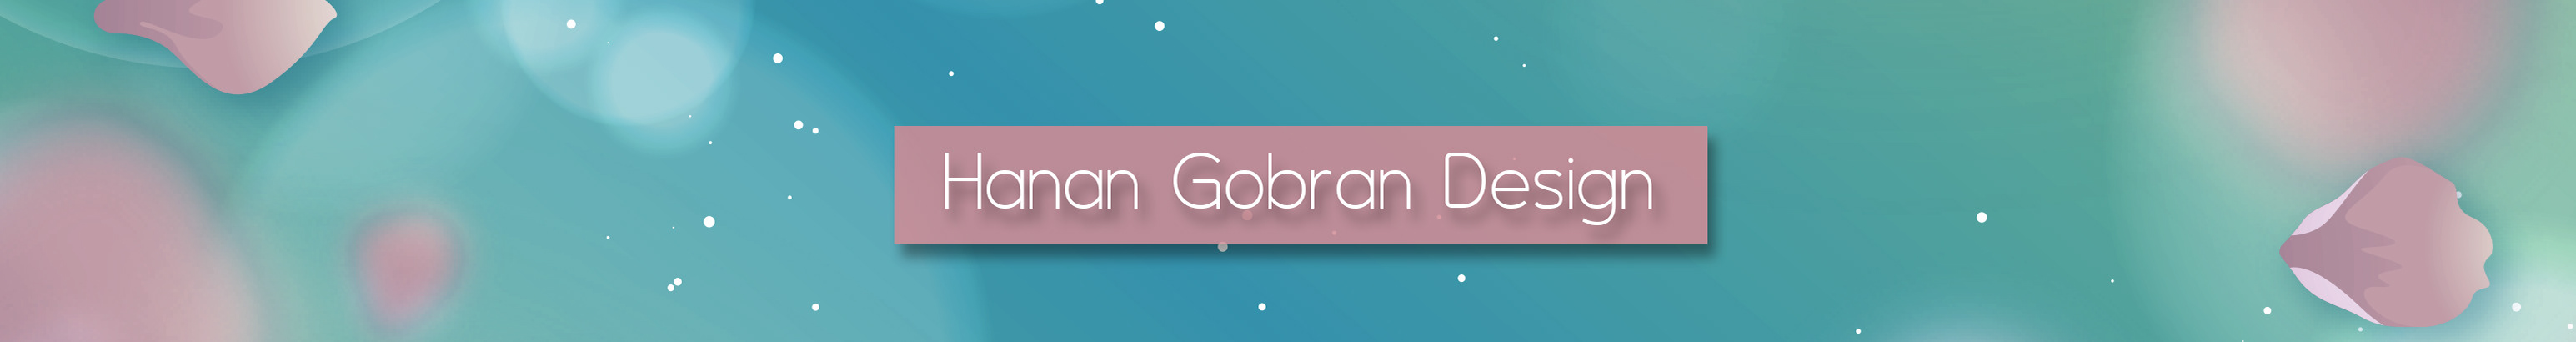 Profielbanner van Hanan Gobran